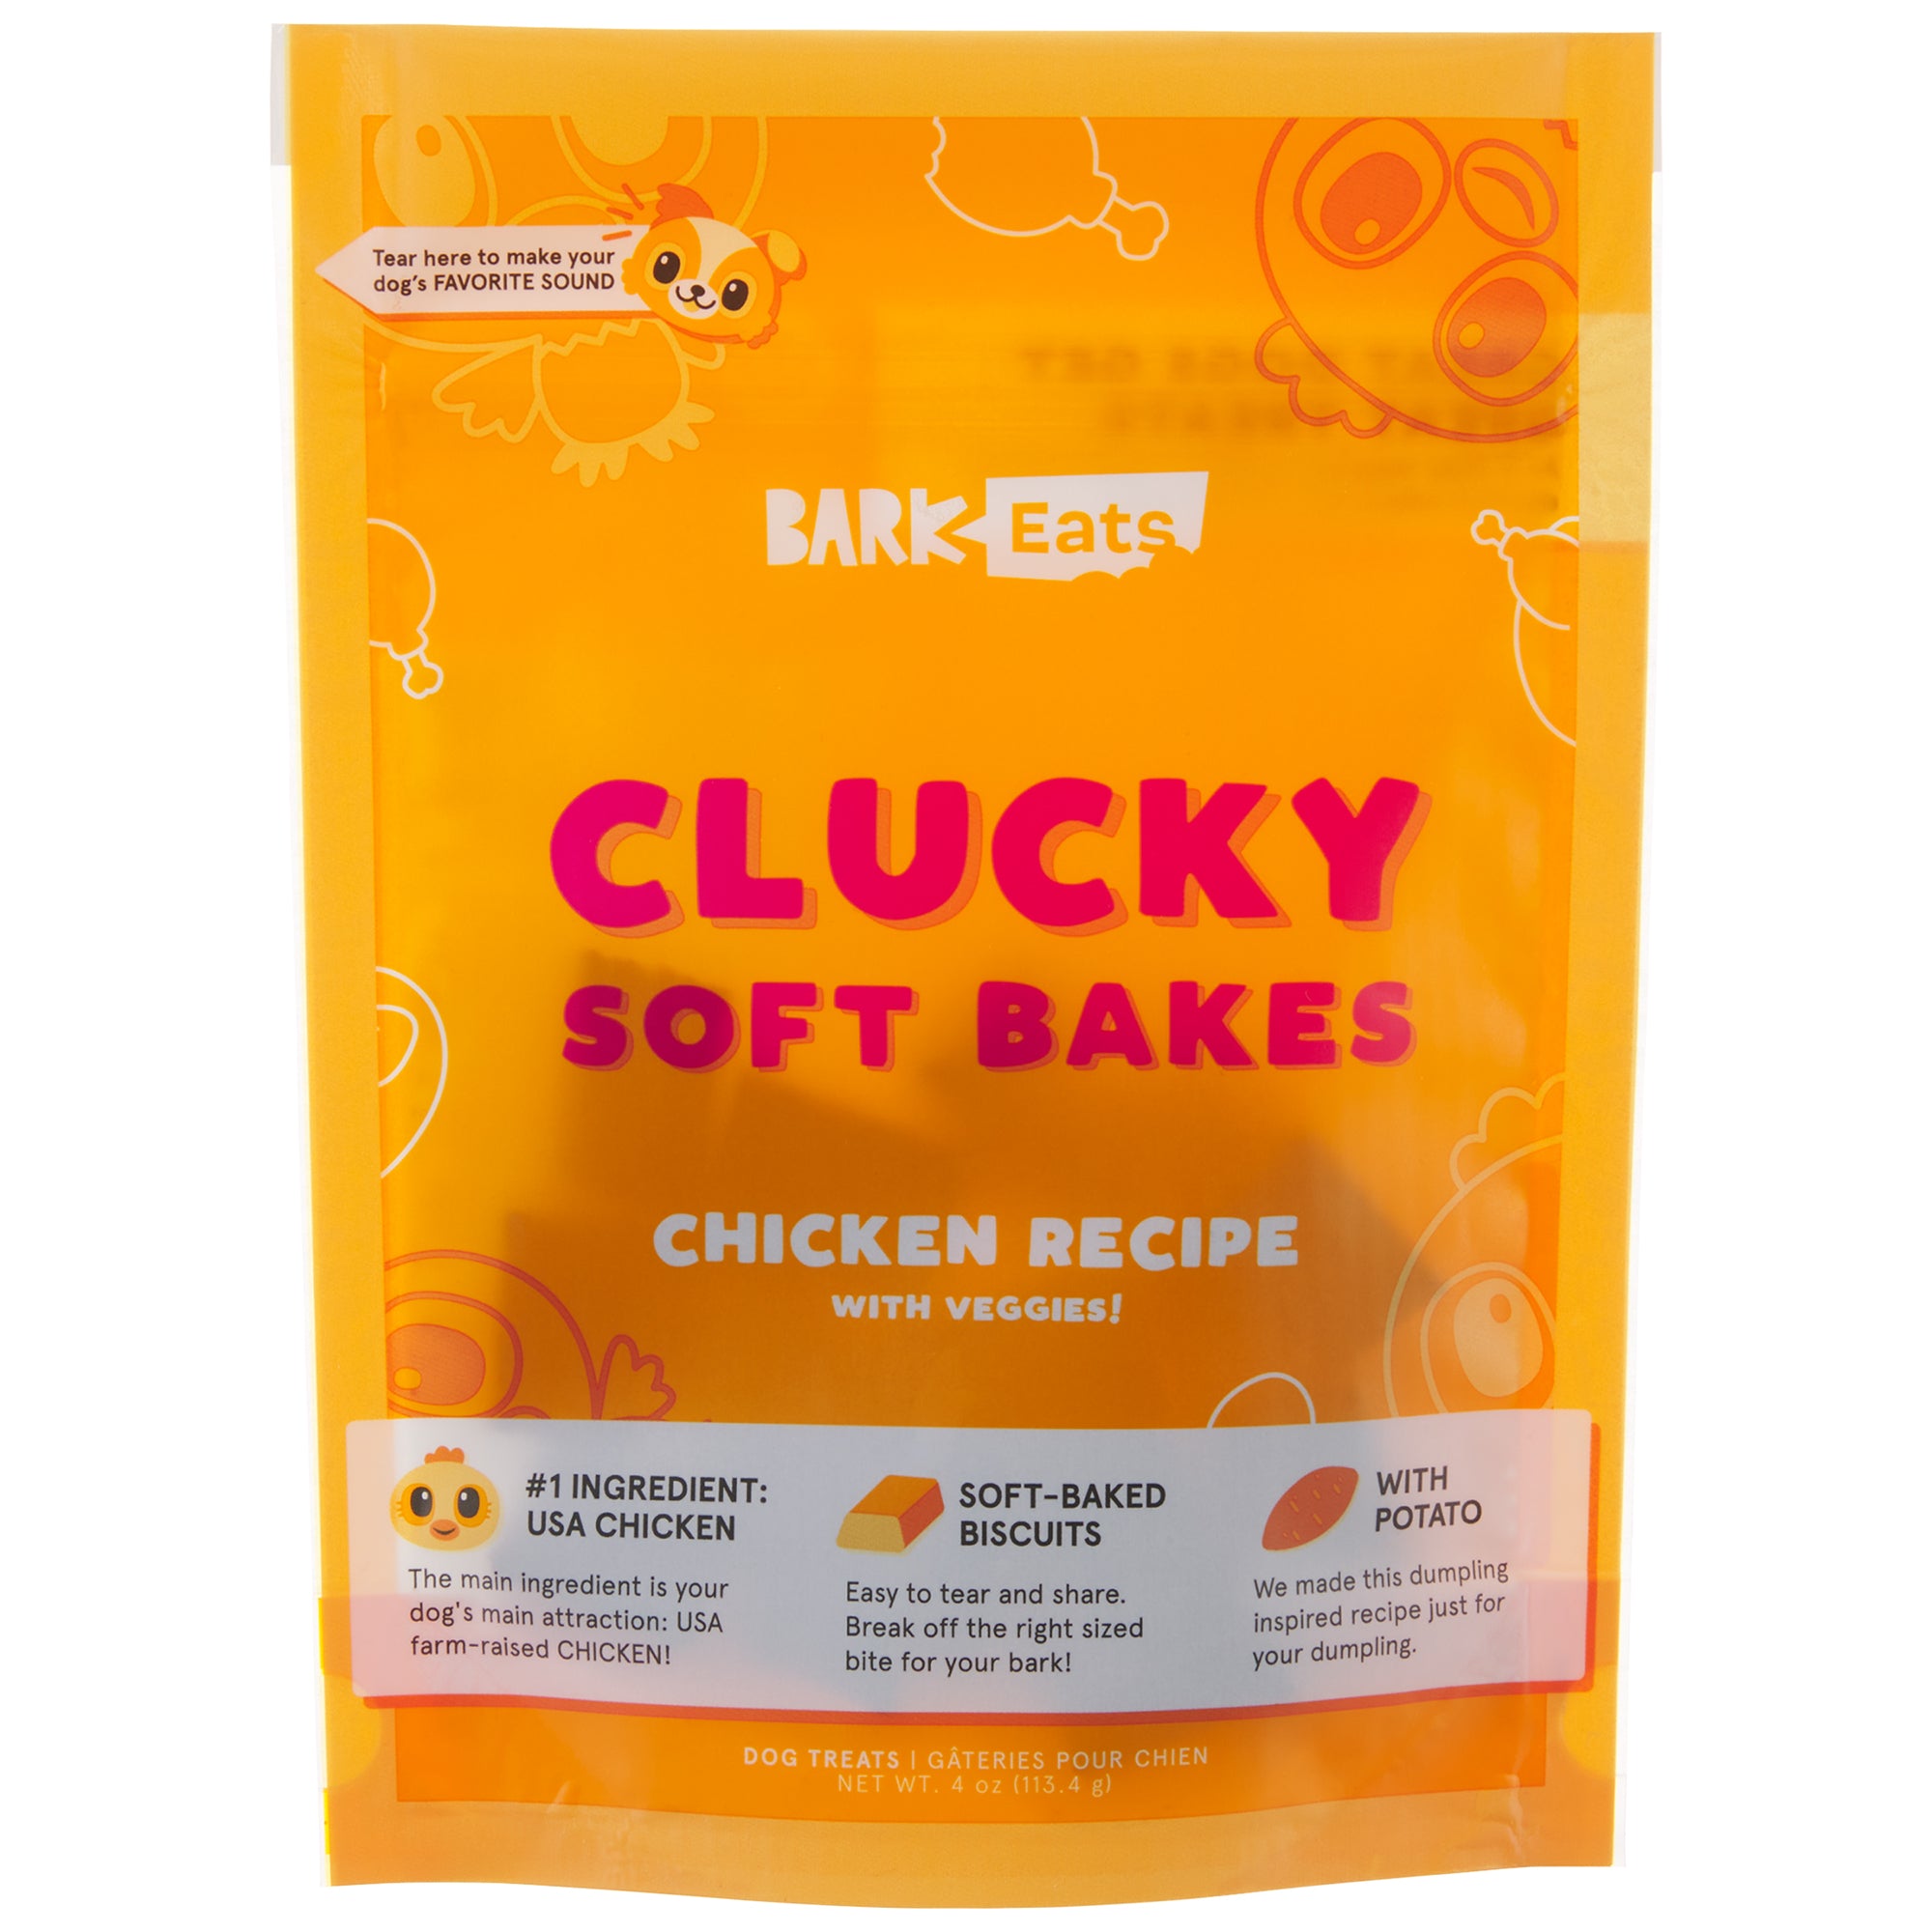 Clucky Soft Bakes